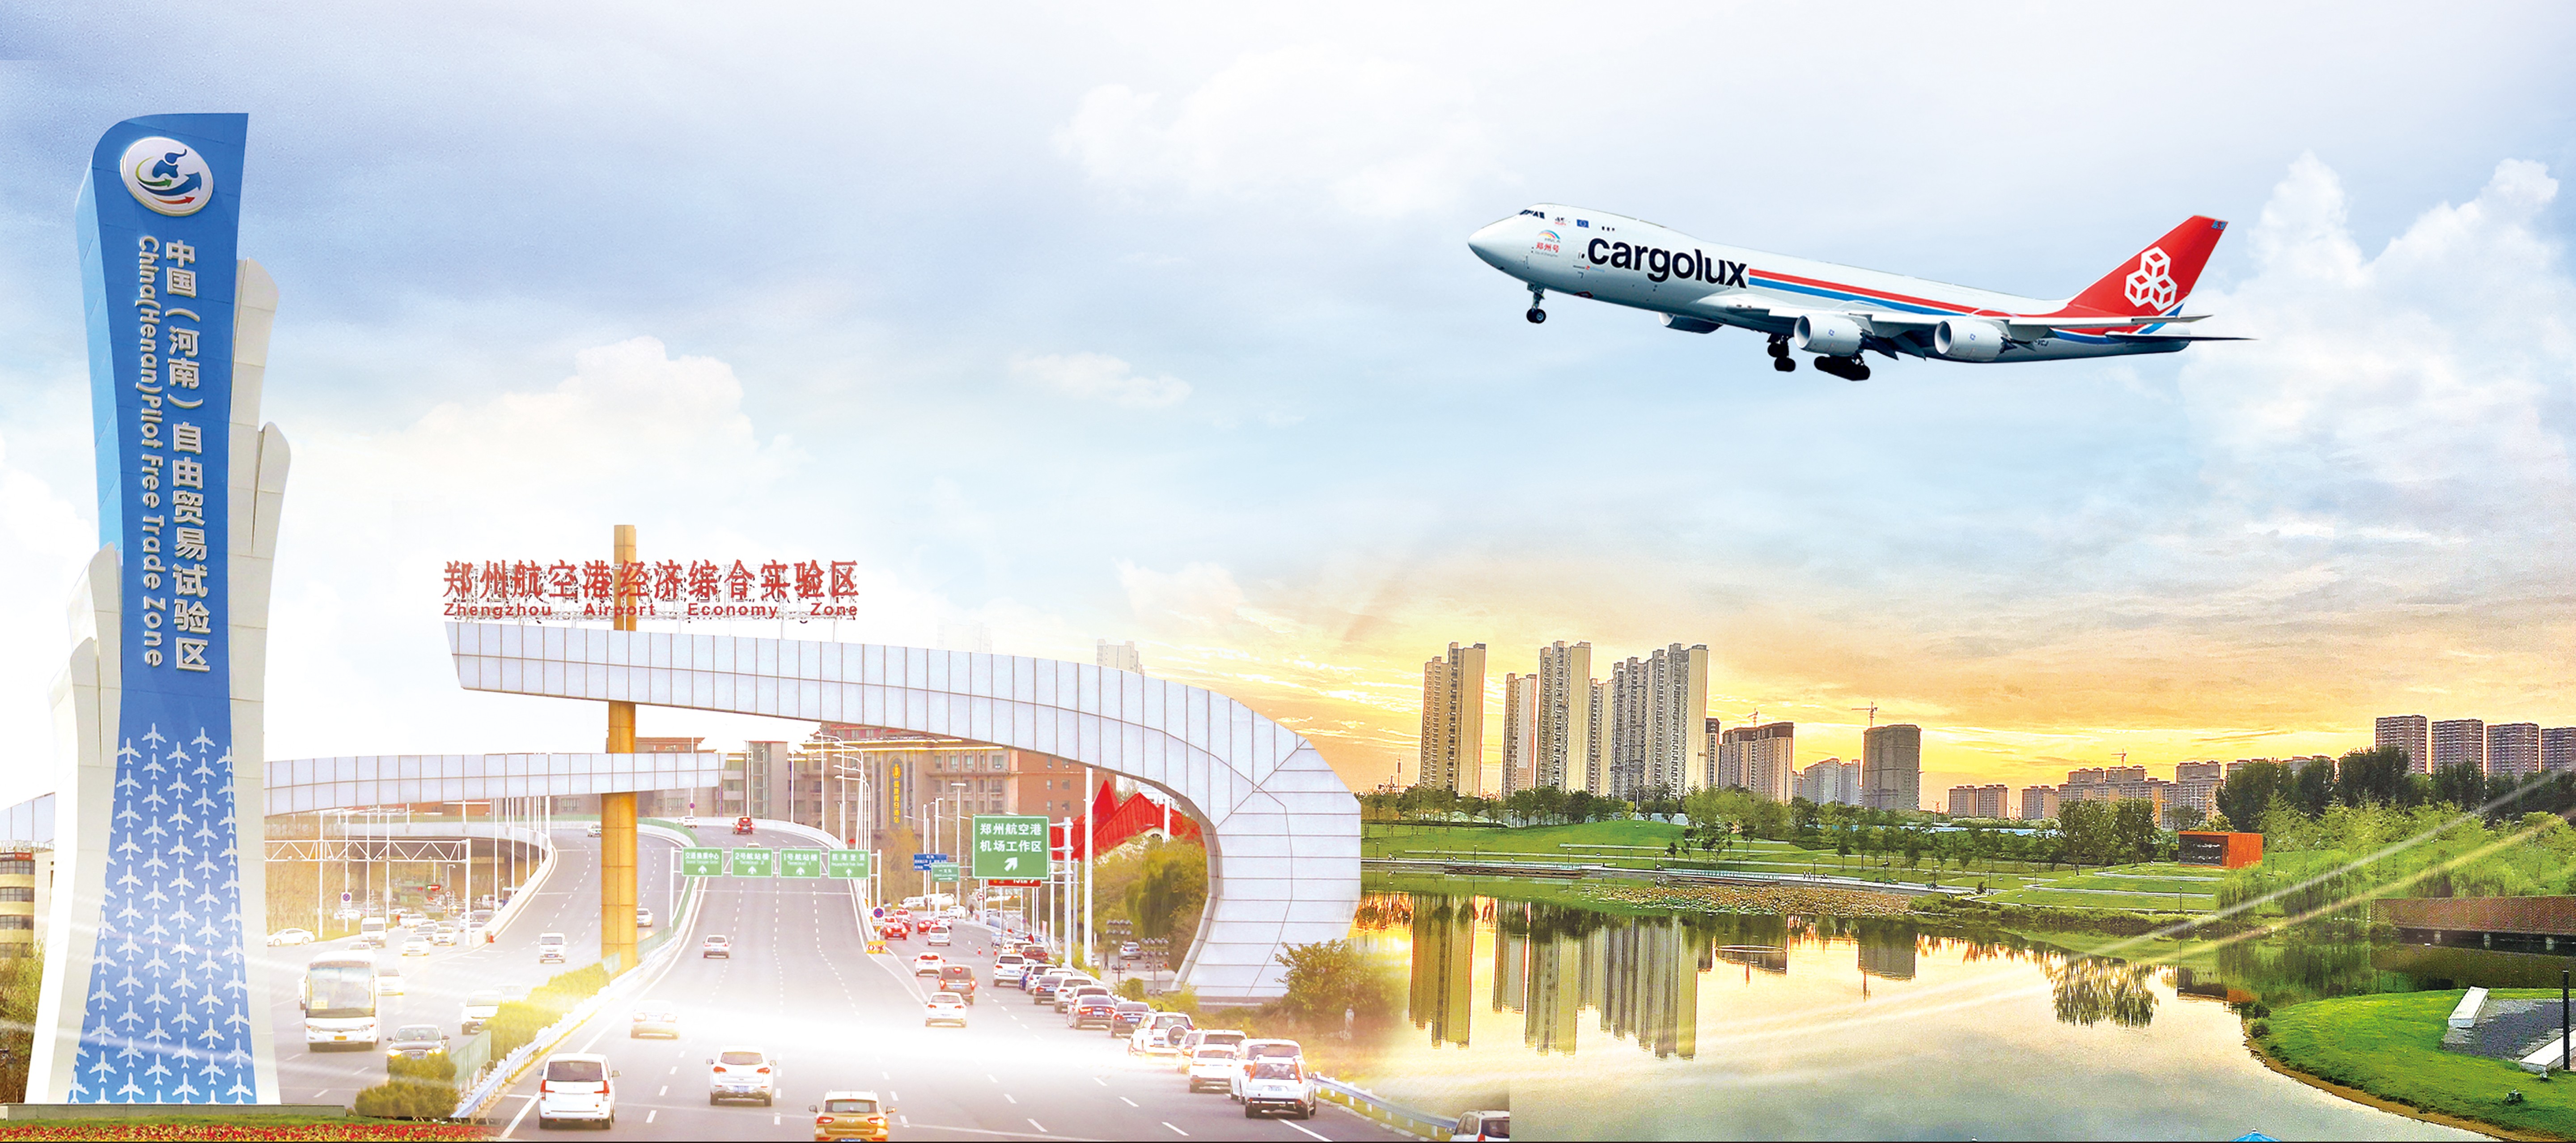 最高奖励500万 郑州航空港区会展业扶持政策重磅发布